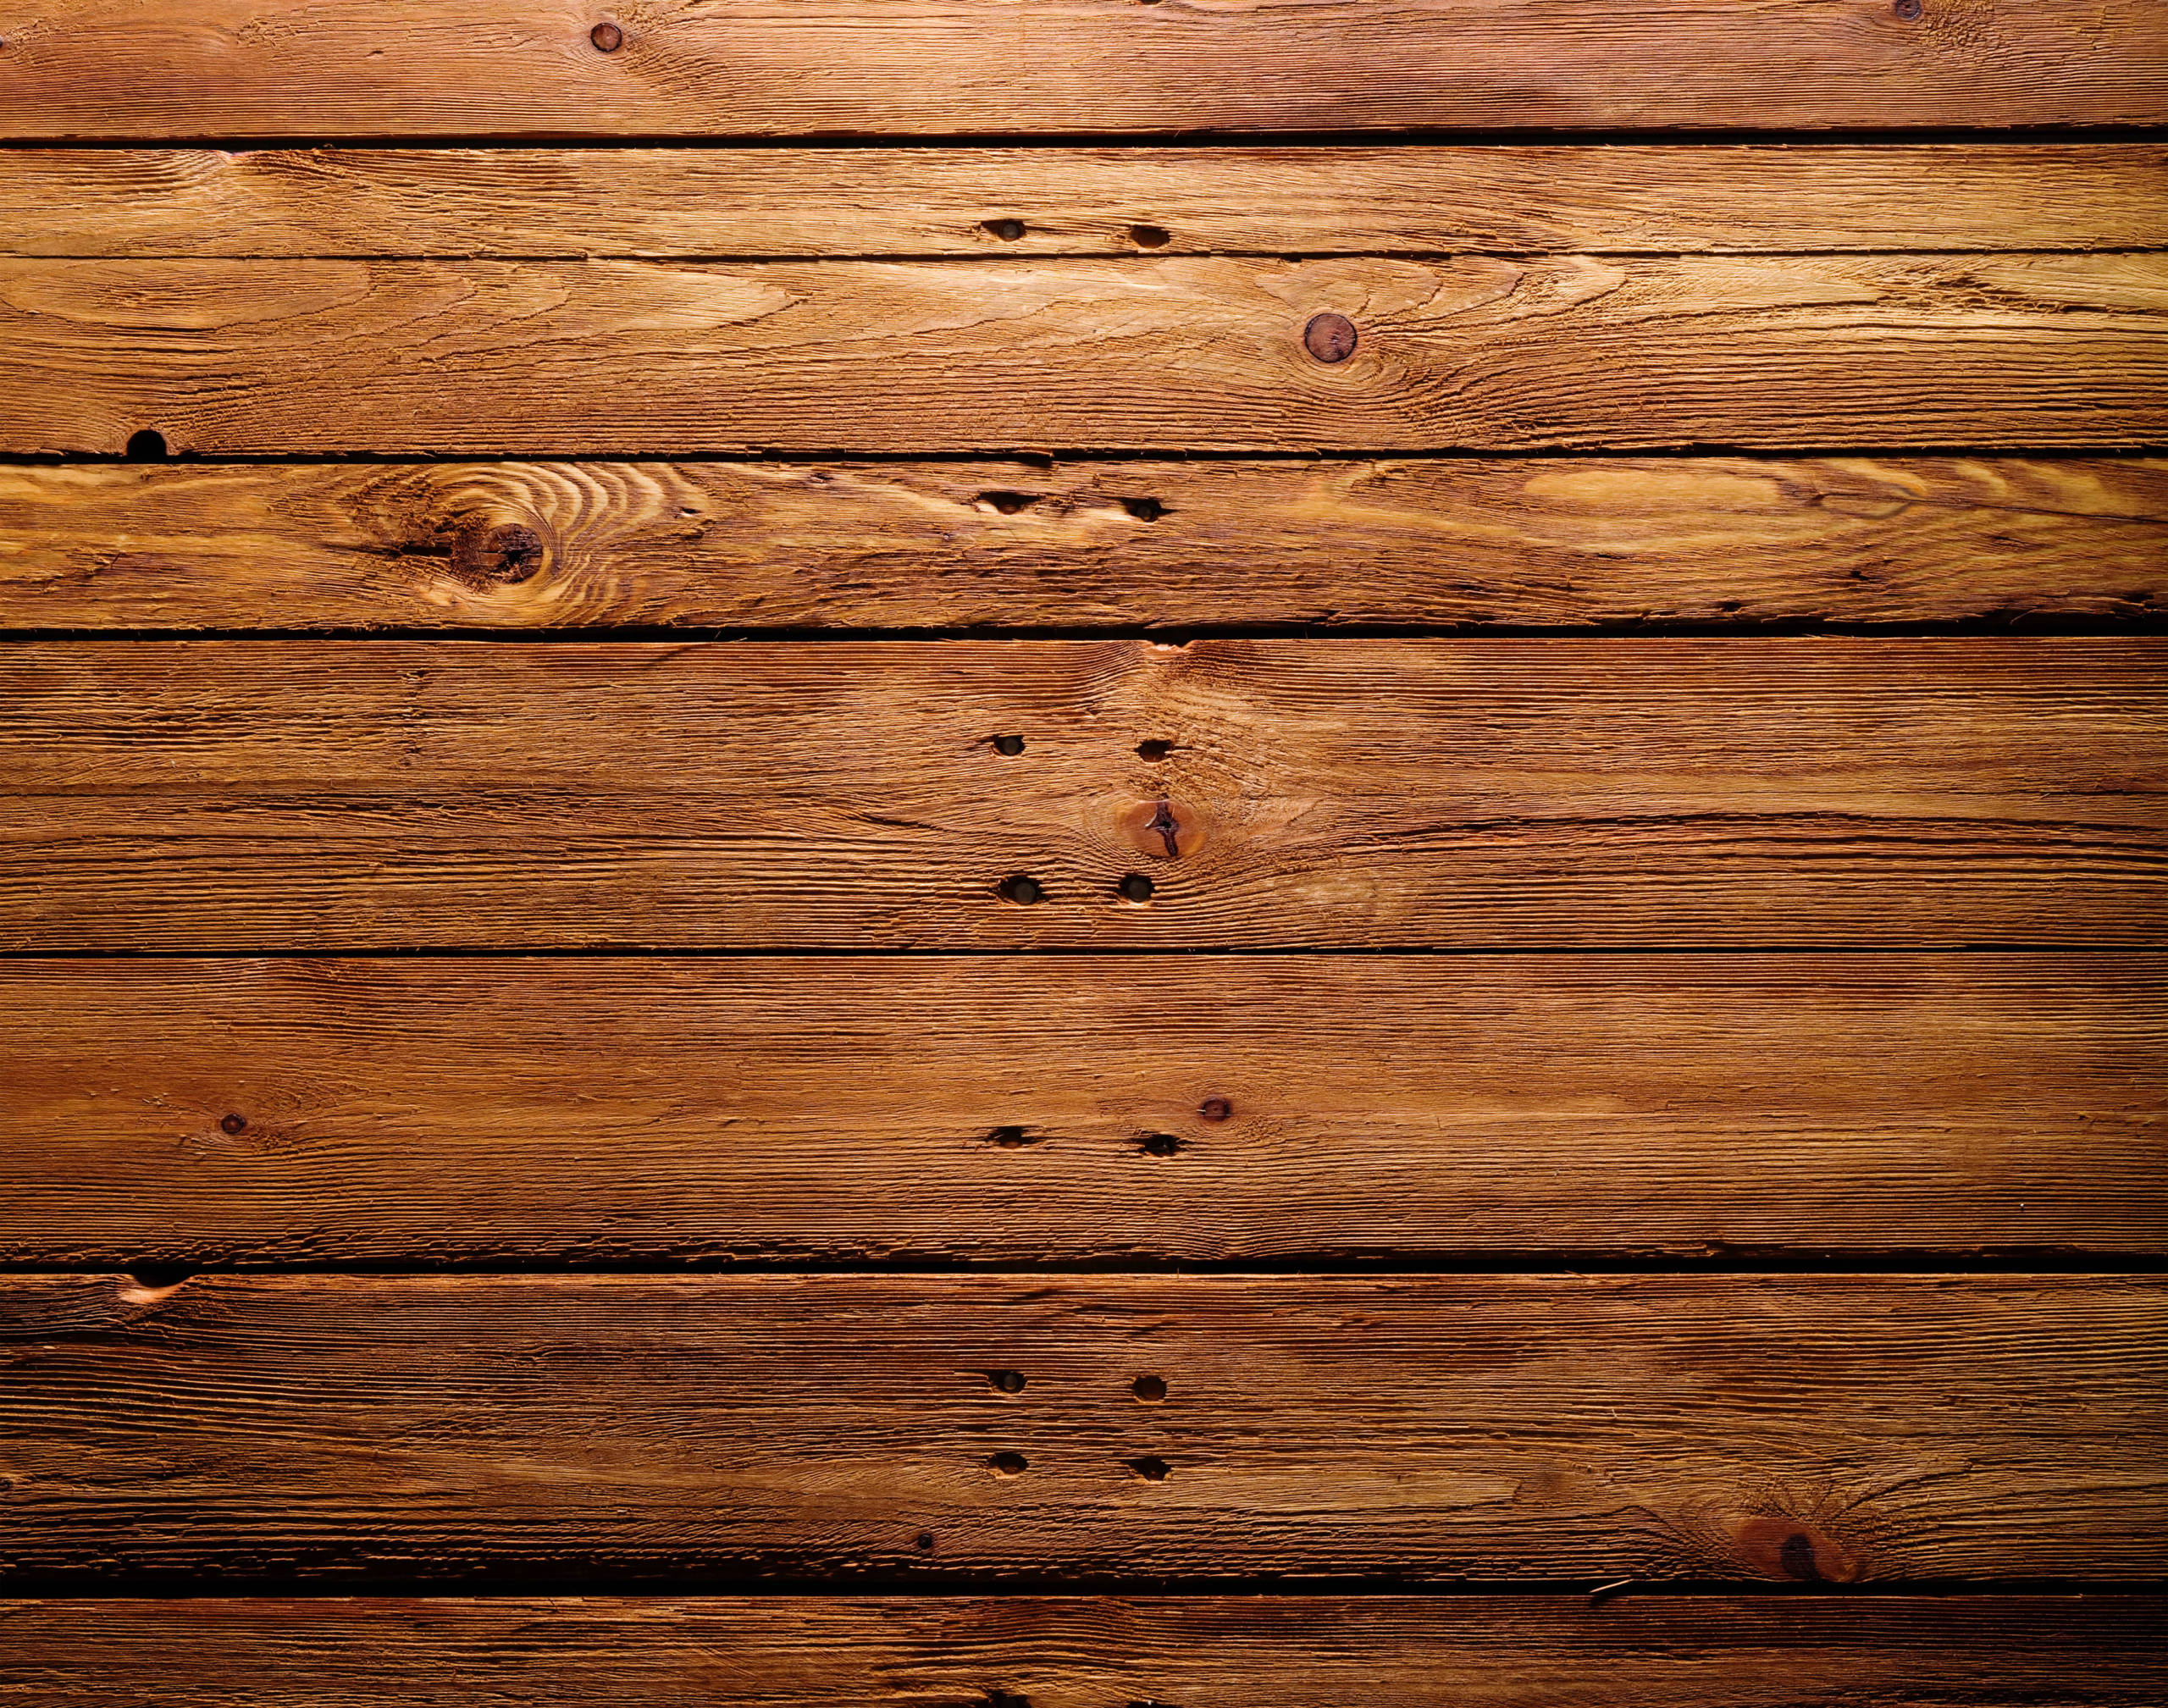 Cảm nhận sự mộc mạc và ấm áp đầy tinh tế của vải gỗ thông qua hình ảnh chất lượng cao. Lớp vân gỗ tự nhiên trên bề mặt tạo nên một cảm giác ấm cúng và gần gũi, làm cho ngôi nhà của bạn trở nên ấn tượng hơn bao giờ hết.